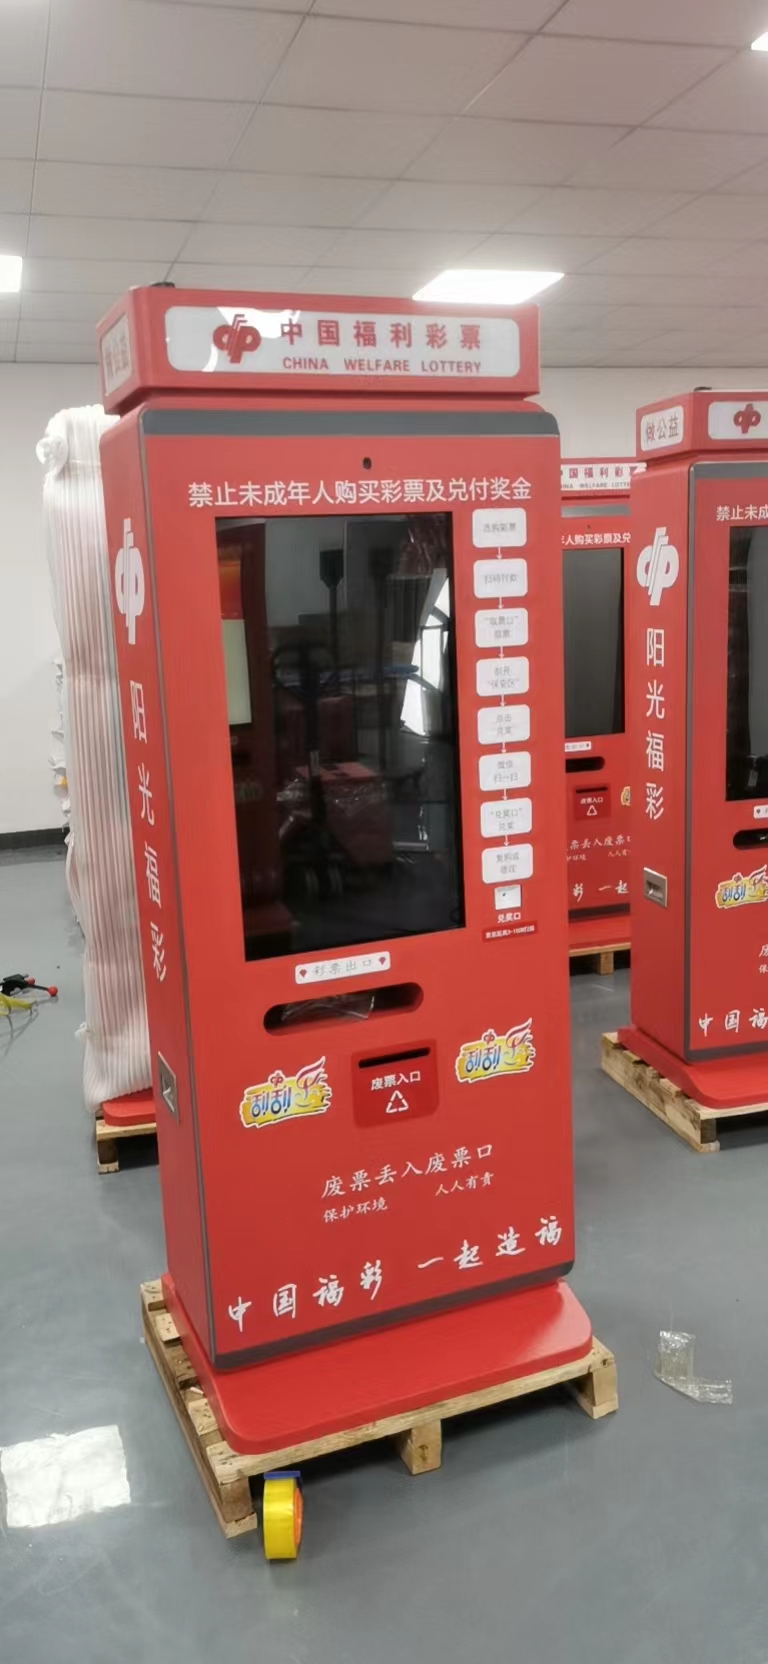 红外防水触摸框在自助设备的应用-加油机-垃圾回收柜